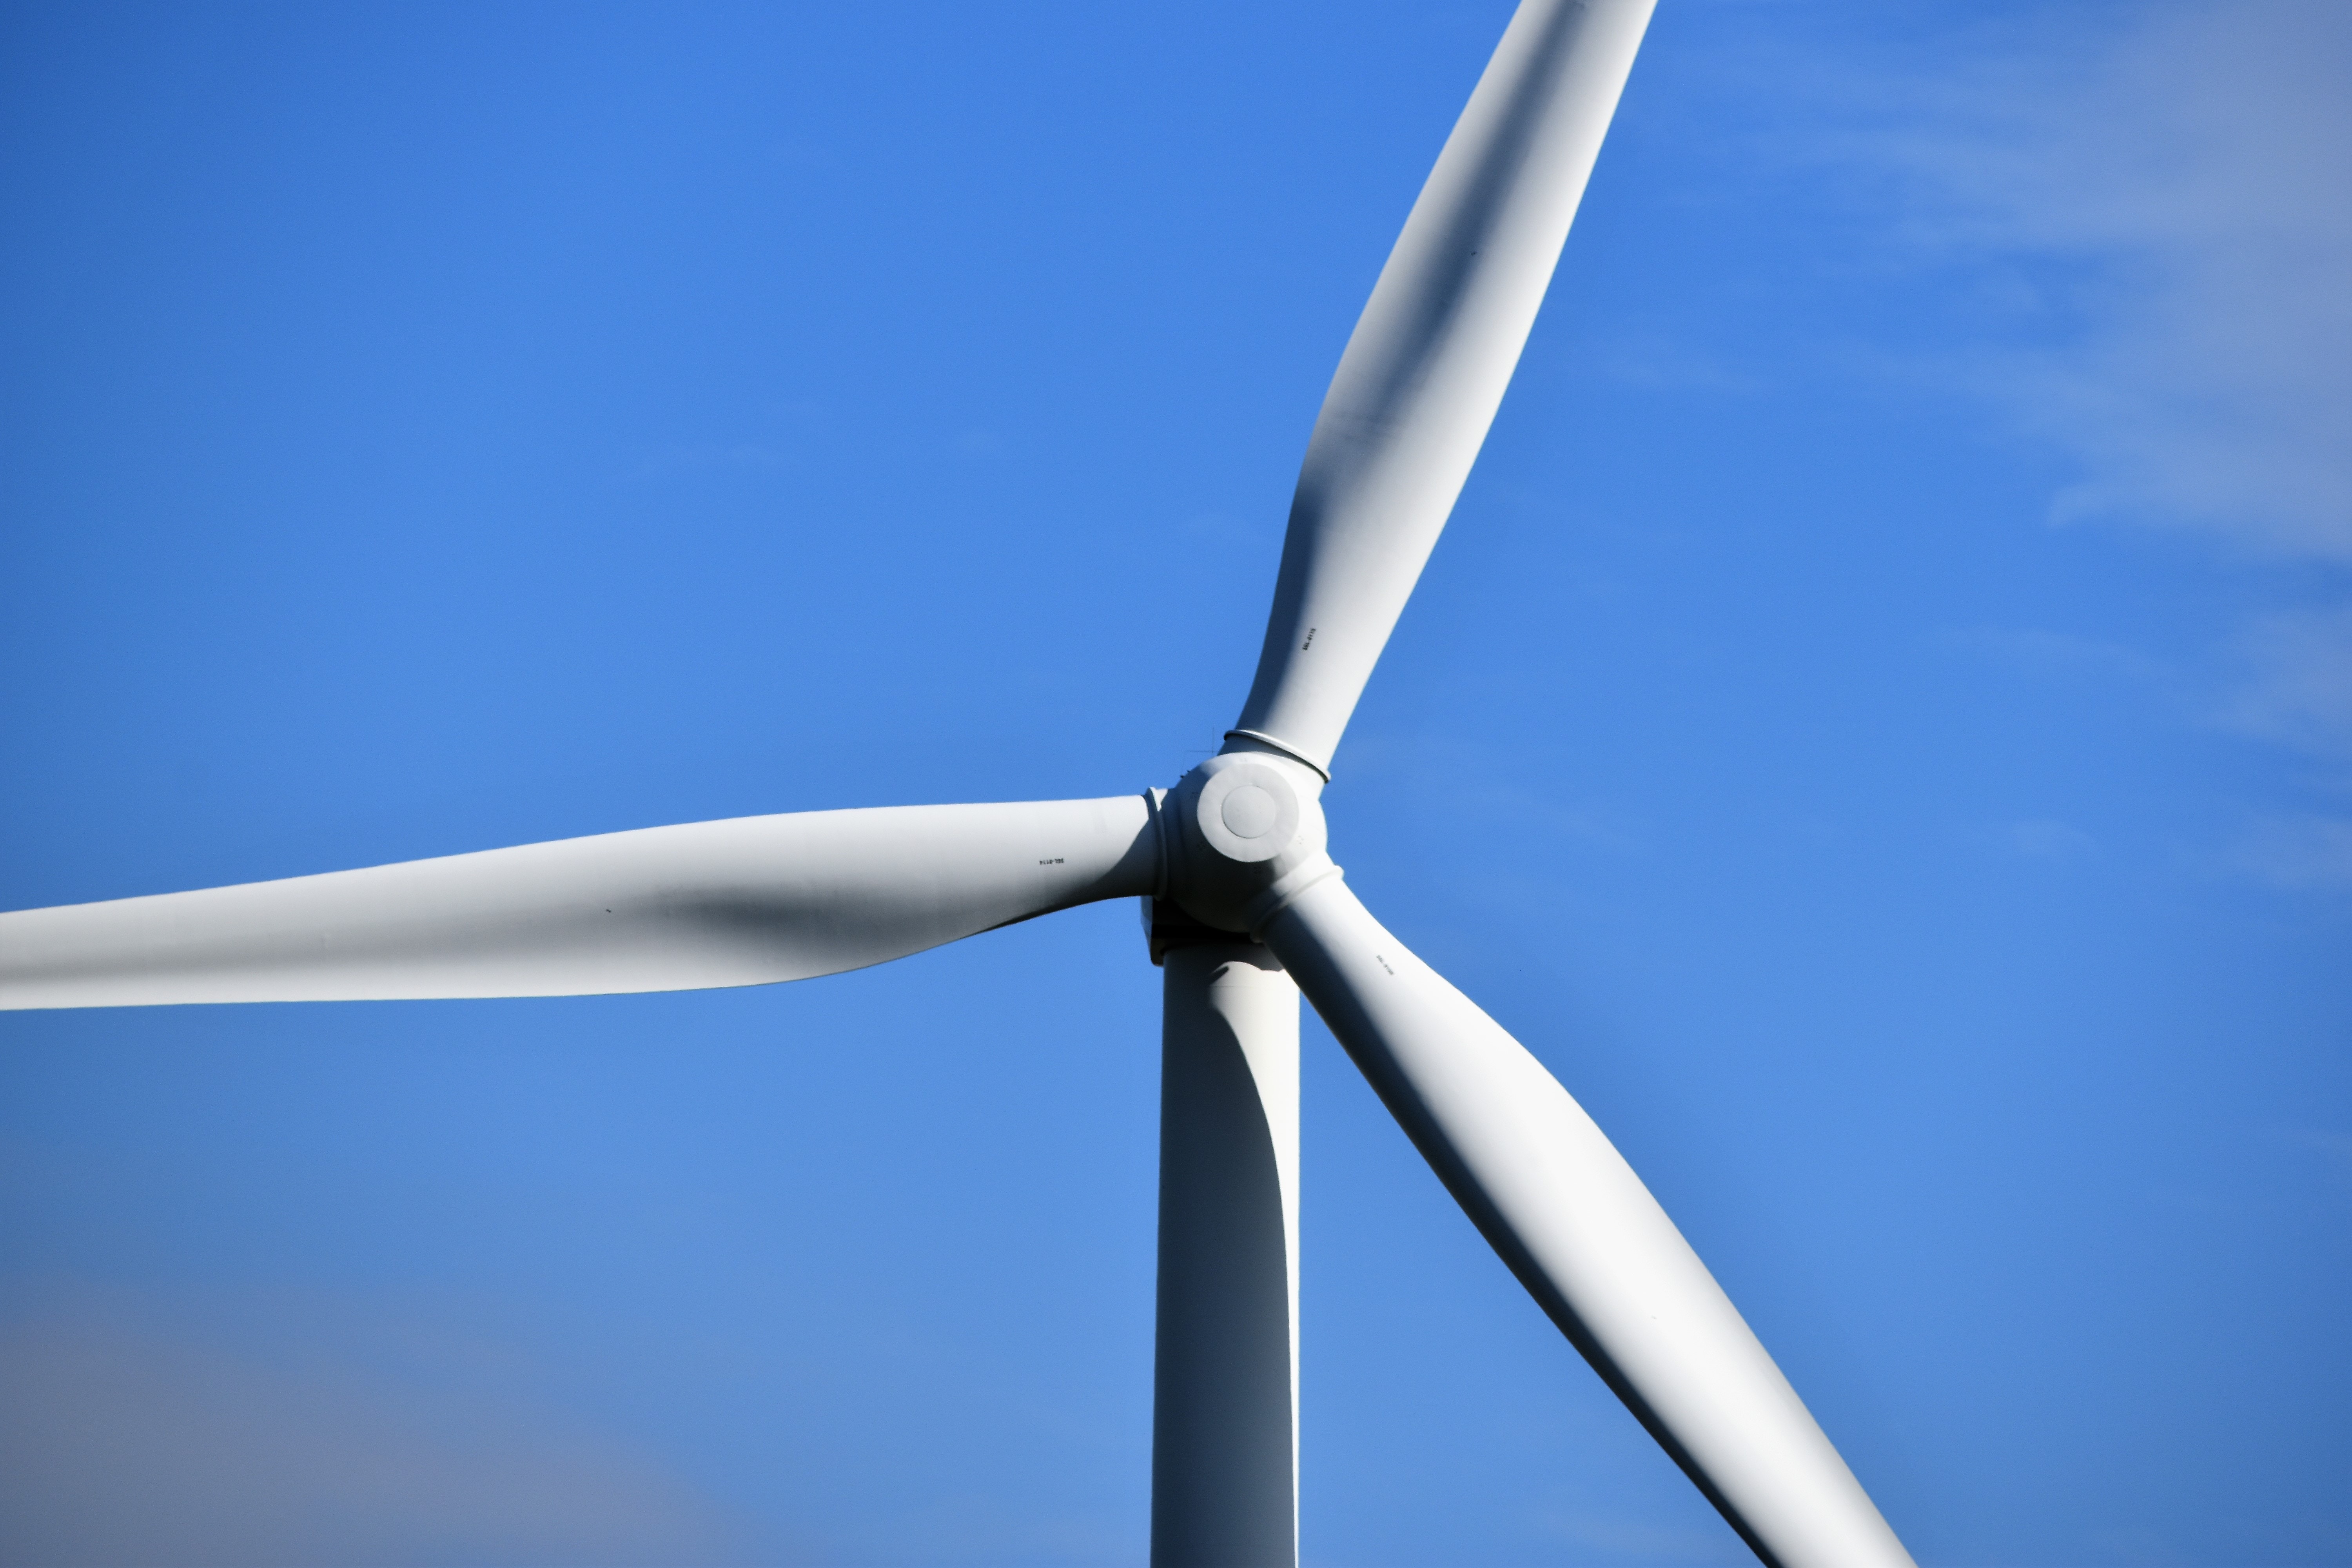 Ian MacLeod Distillers Wind turbine renewable energy system